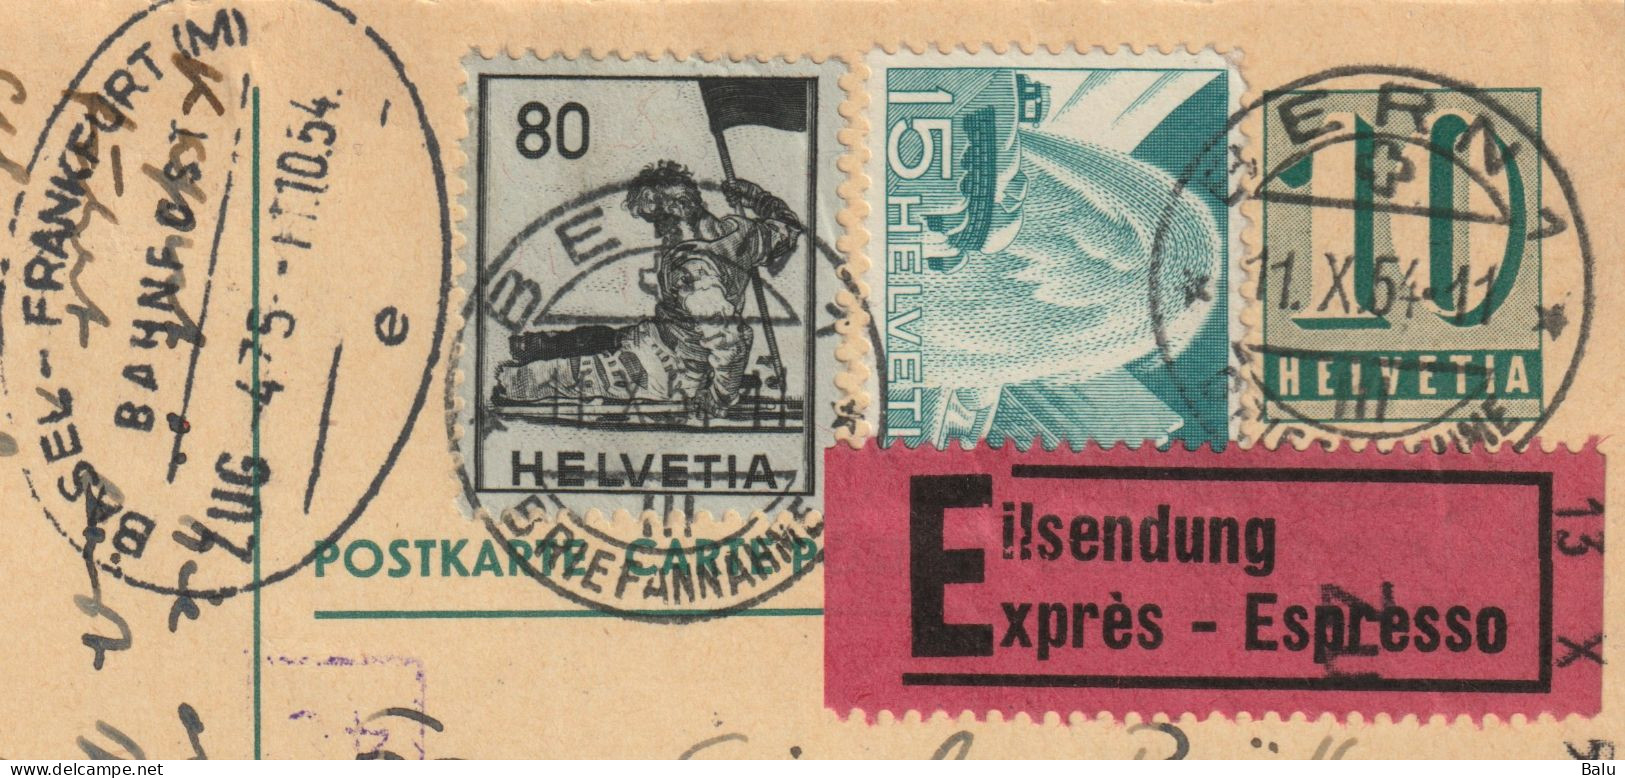 Schweiz 1954 Ganzsache Ziffer 10, Zusatzfrankaturen 80 + 15, Eilzustellung, Bahnpoststempel, Nachgesendet, 2 Scans - Ganzsachen